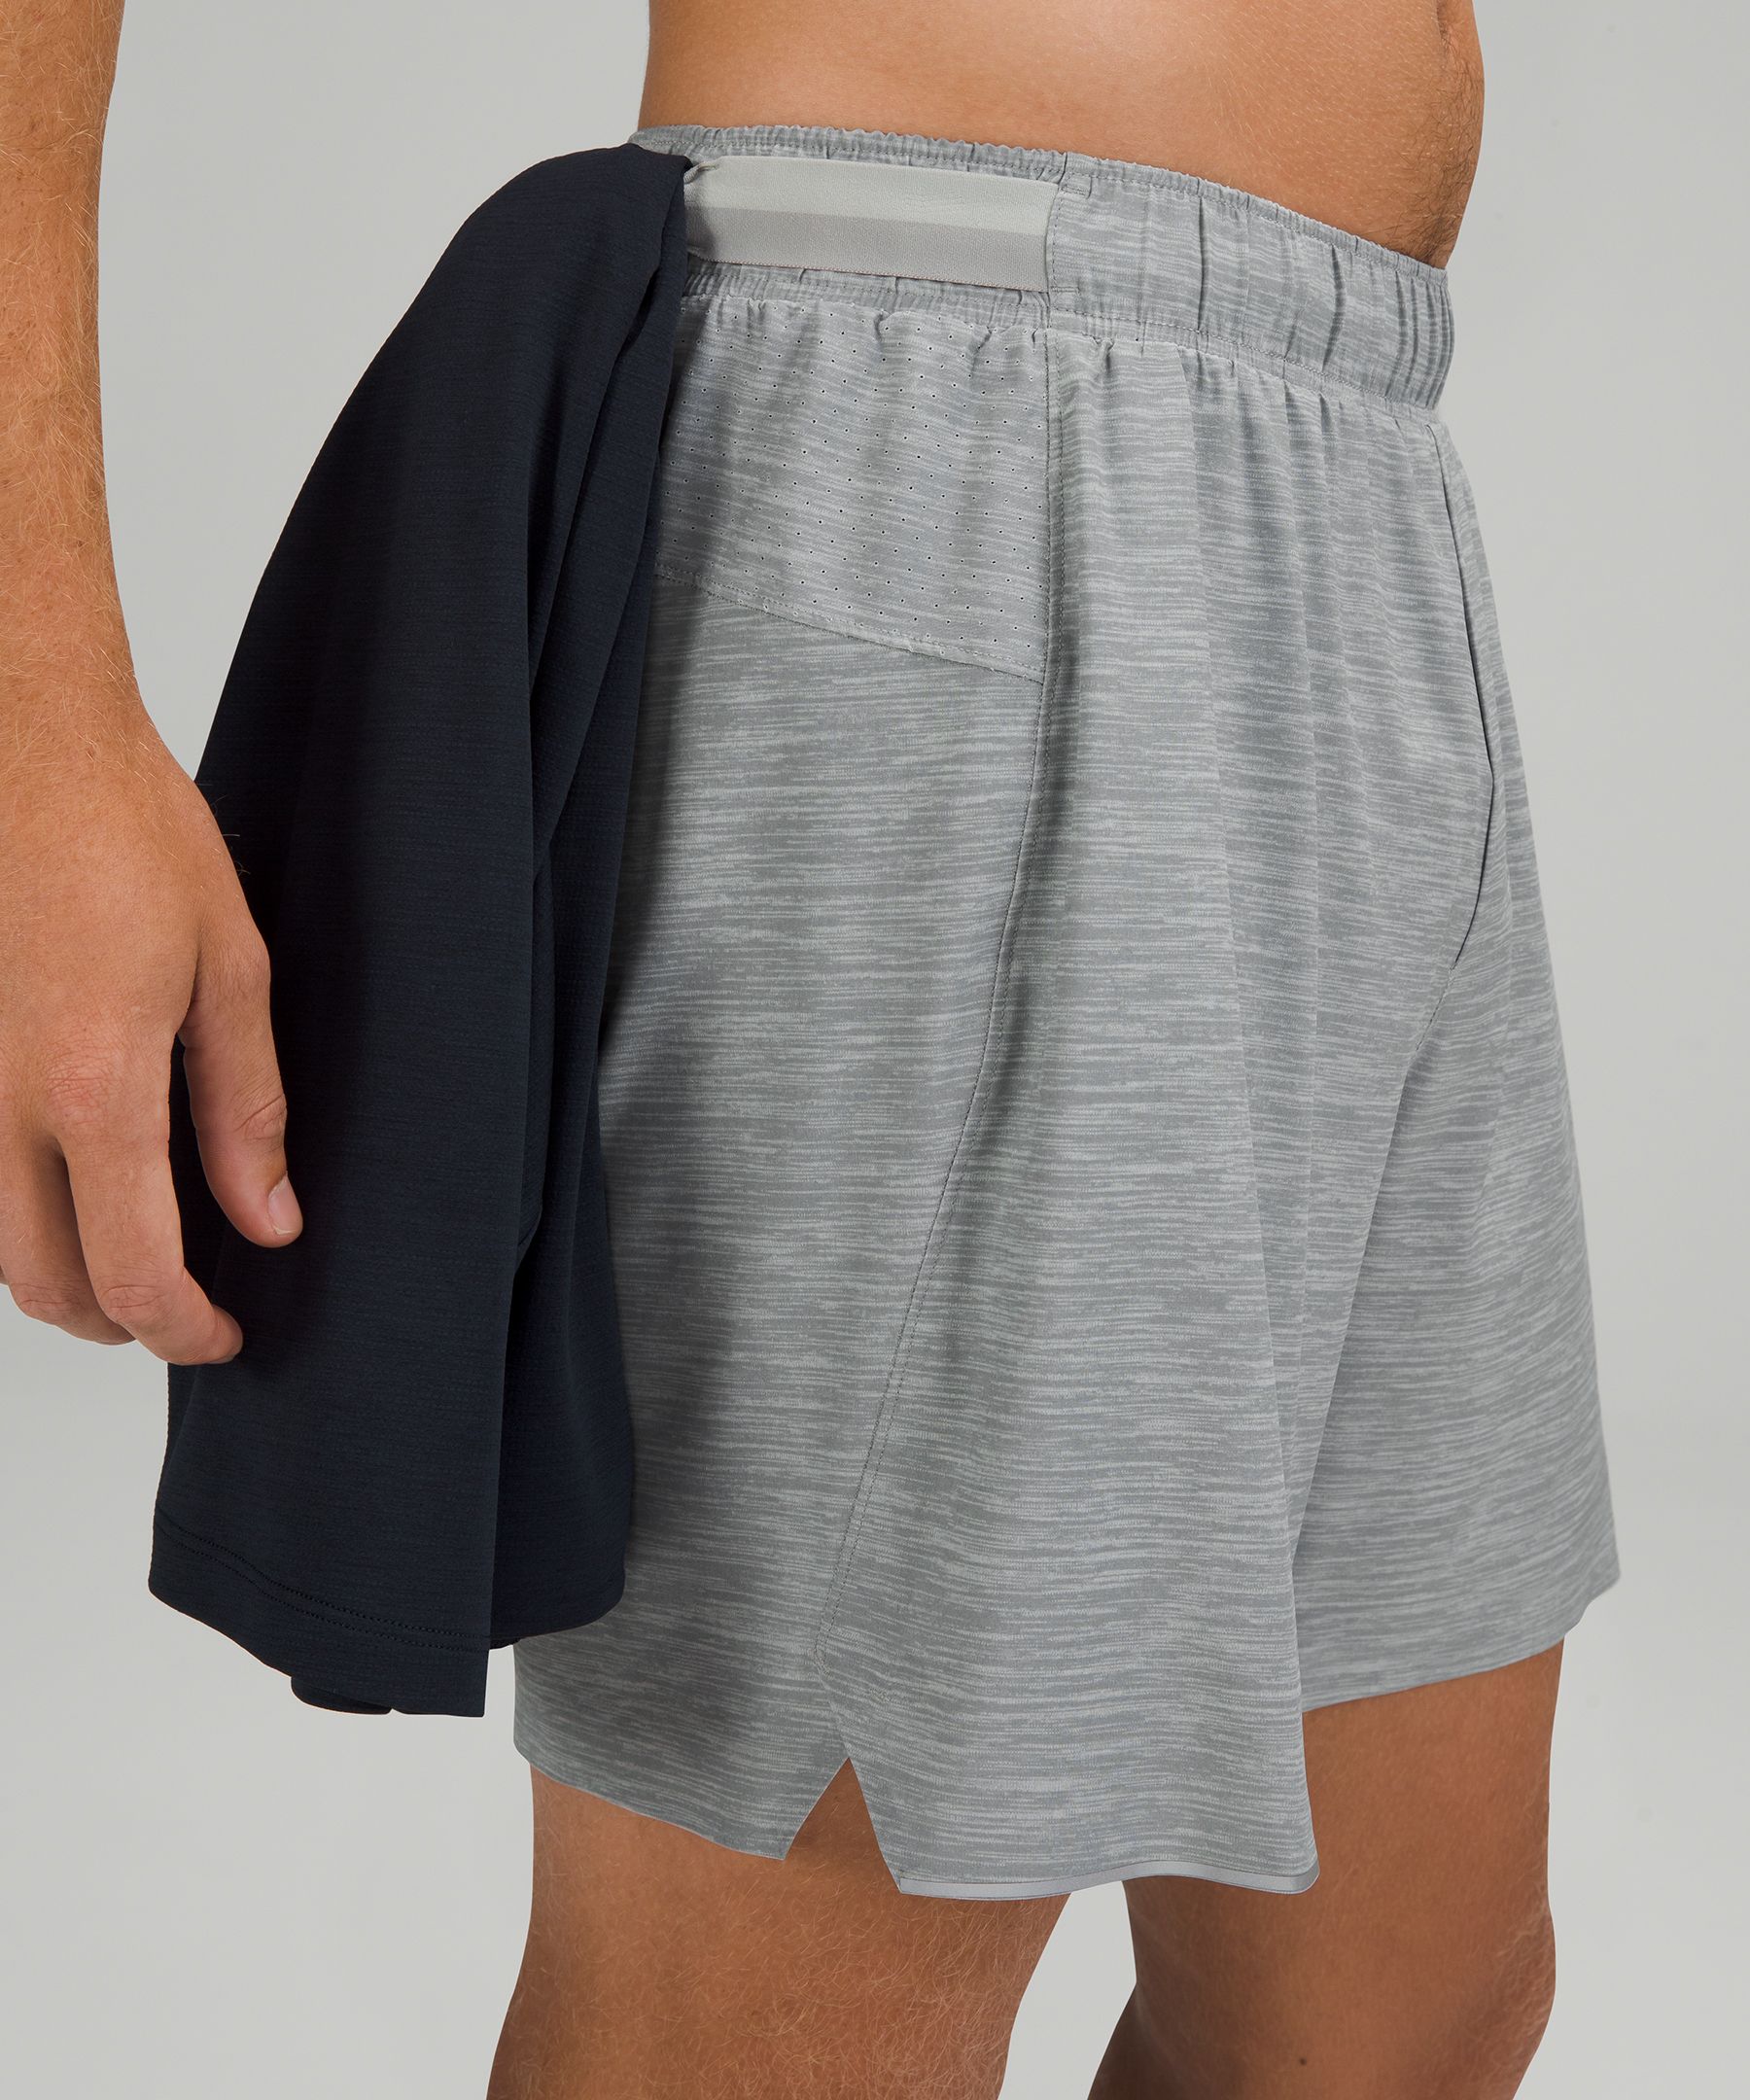 gray lululemon shorts